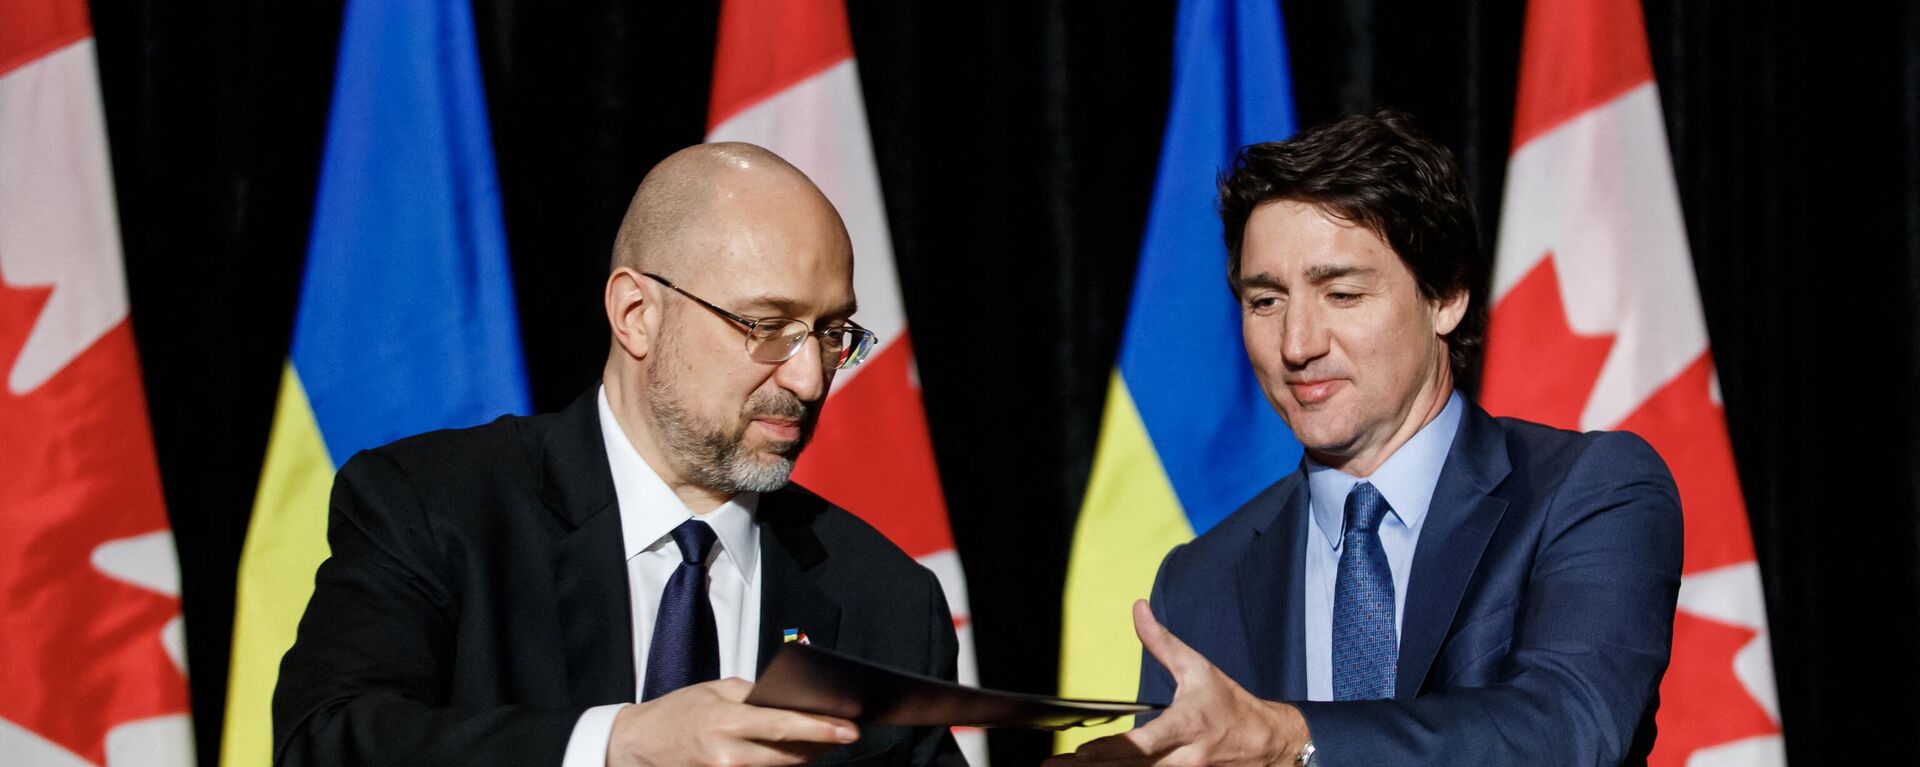 O primeiro-ministro canadense Justin Trudeau (à direita) e o primeiro-ministro ucraniano Denys Shmyhal (à esquerda) assinam um acordo durante uma coletiva de imprensa bilateral em Toronto, Canadá, em 11 de abril de 2023 - Sputnik Brasil, 1920, 11.04.2023